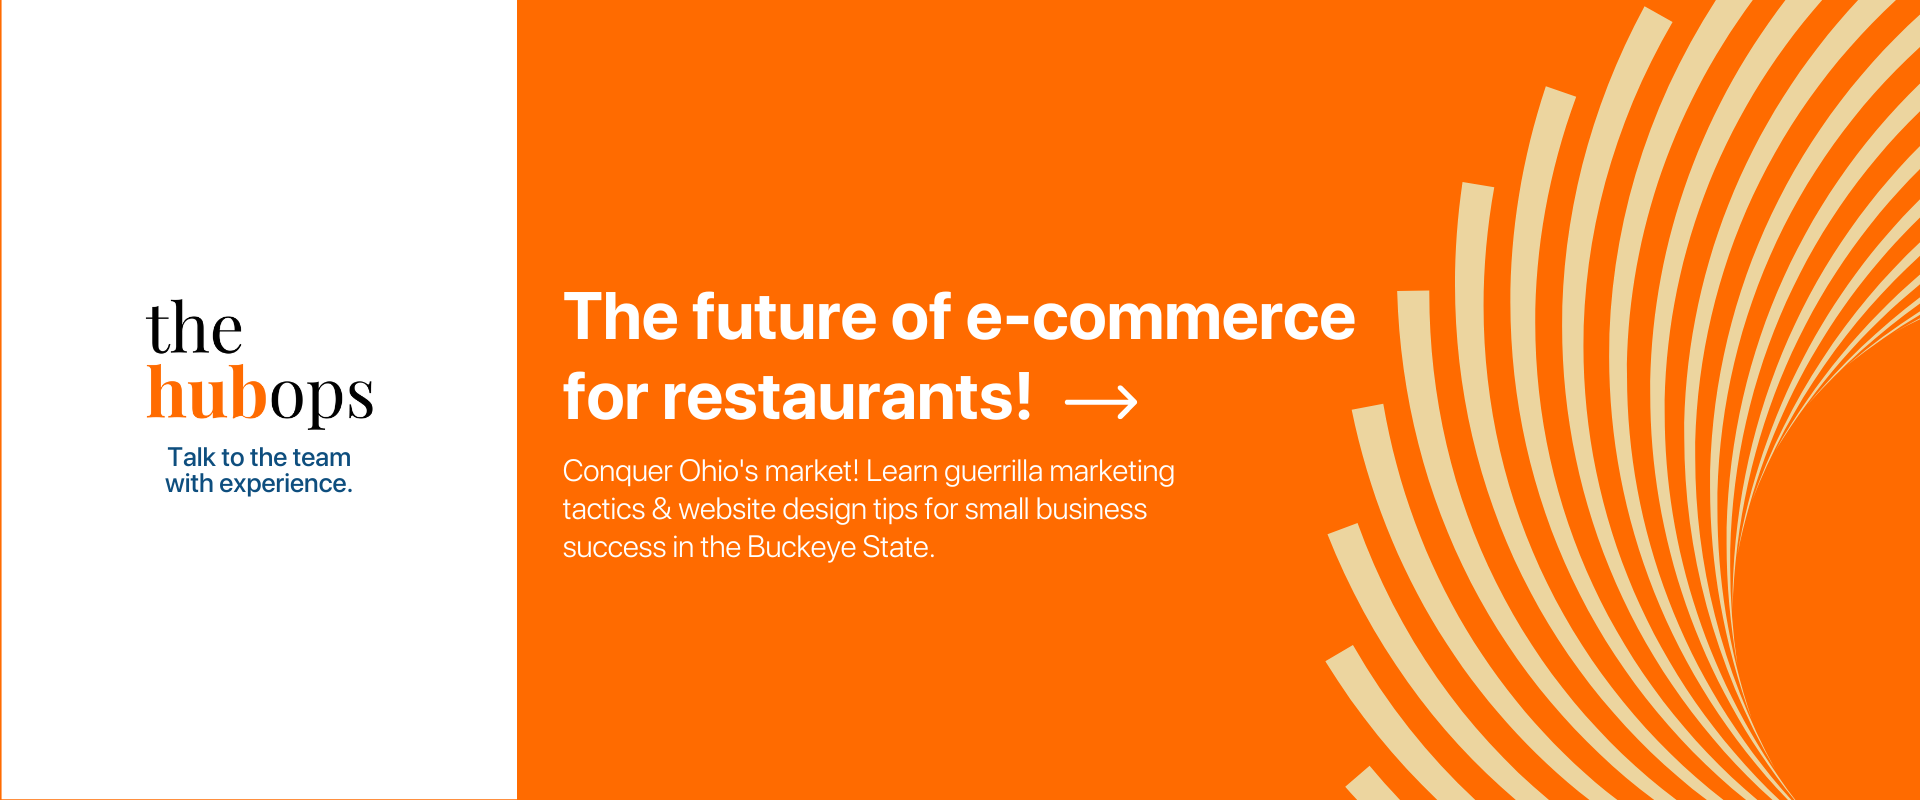 e-commerce for restaurants - The HubOps